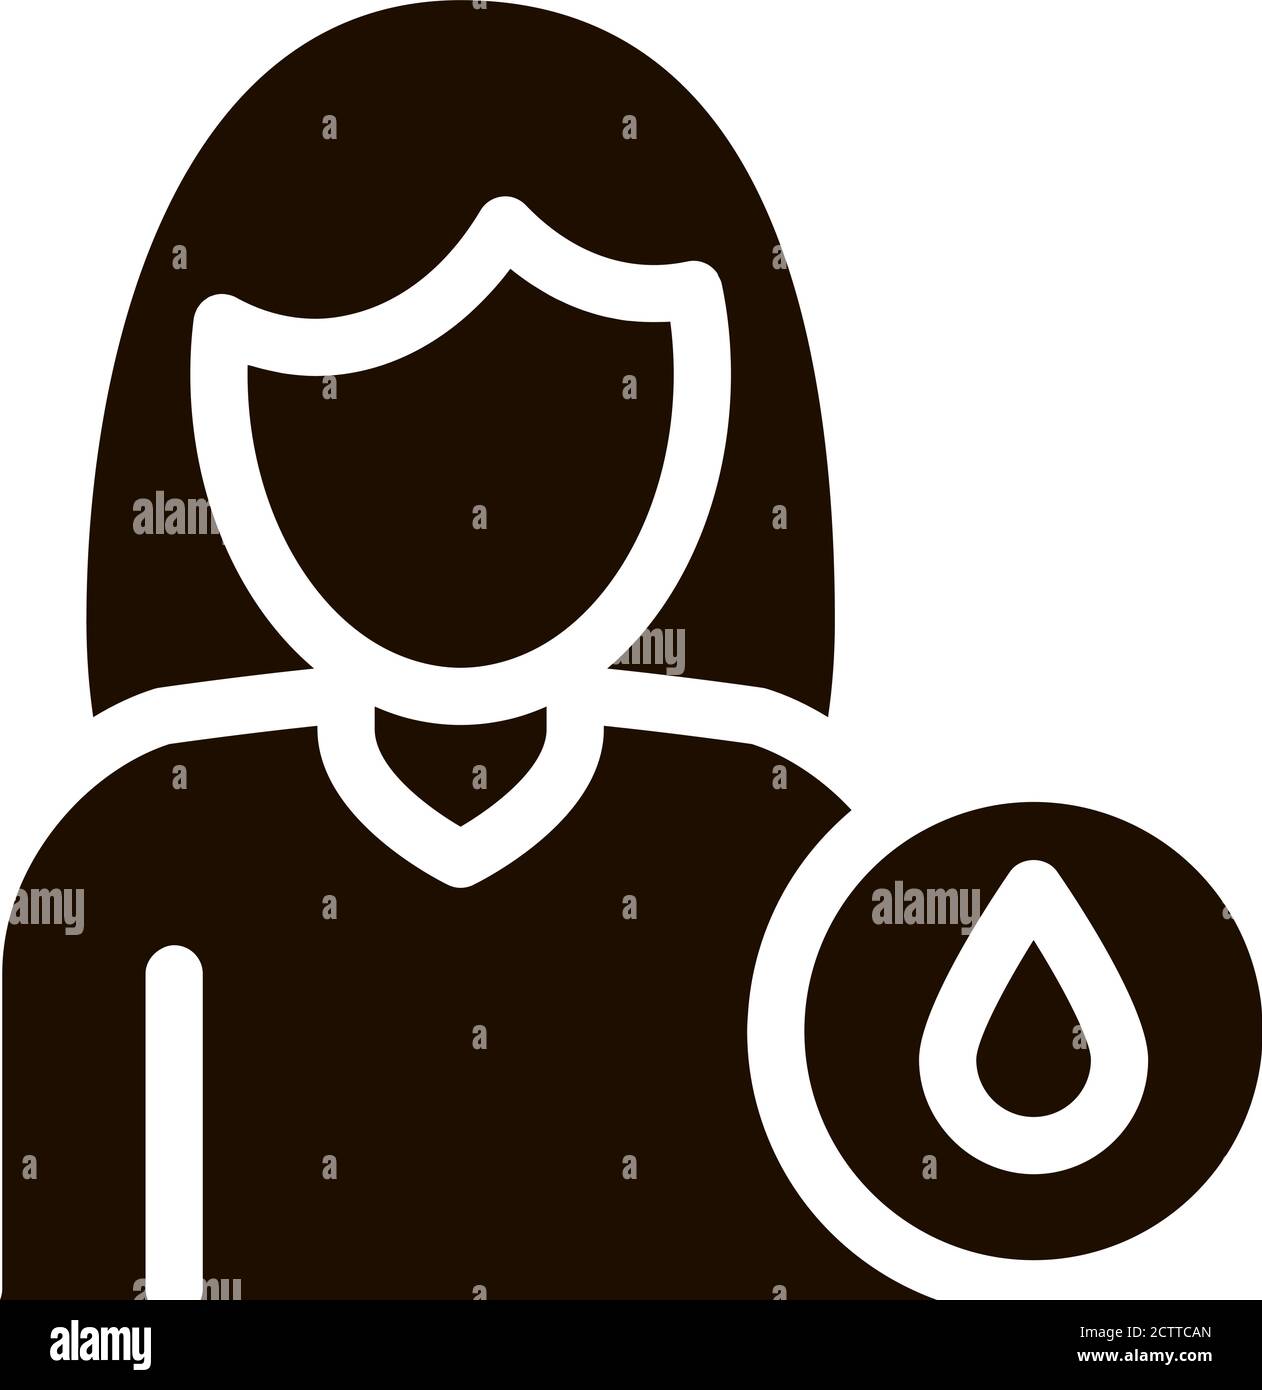 Häufiges Wasserlassen Symptomp Glyphen-Symbol für die Schwangerschaft Stock Vektor